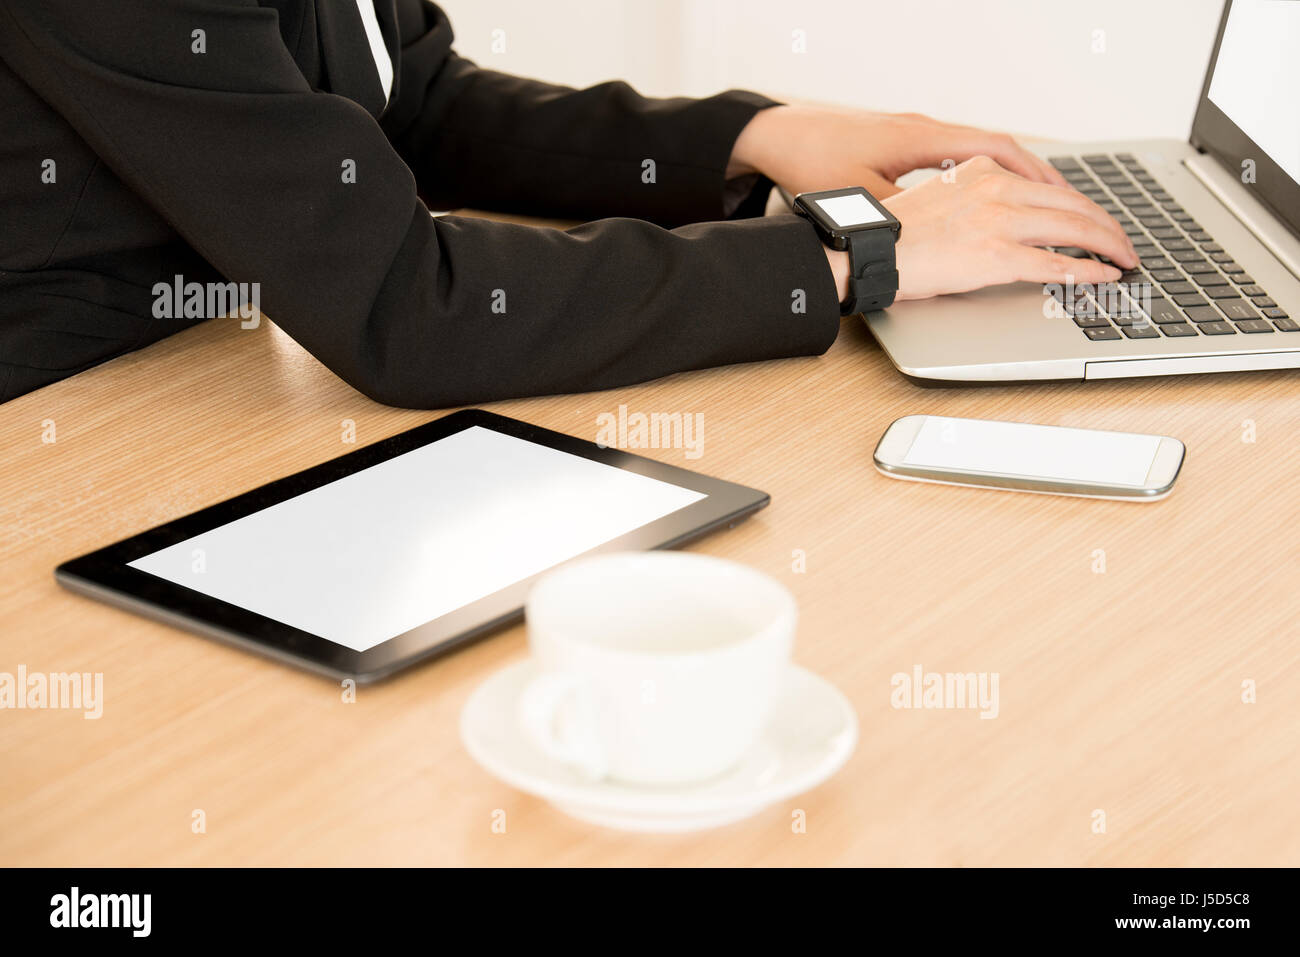 Ordinateur tablette numérique affichage écran vide pour copyspace près de businesswoman se connecter avec son ordinateur portable et smartwatch sur le travail en ligne Banque D'Images